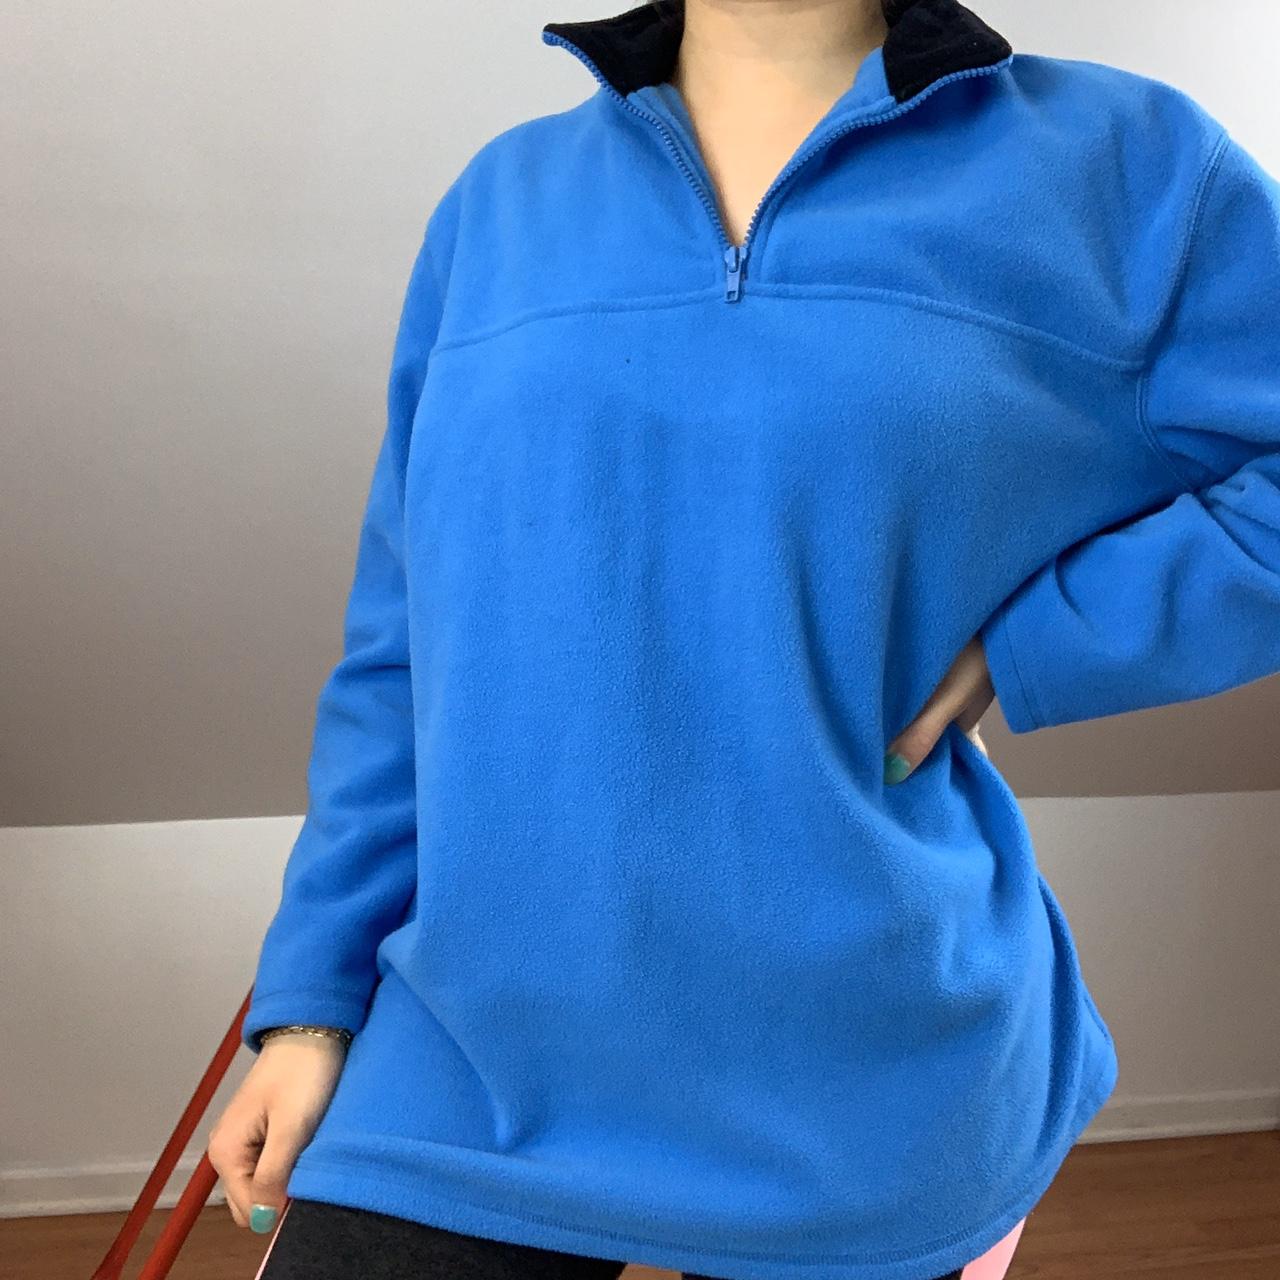 Product Image 1 - Blue fleece sweater size petite